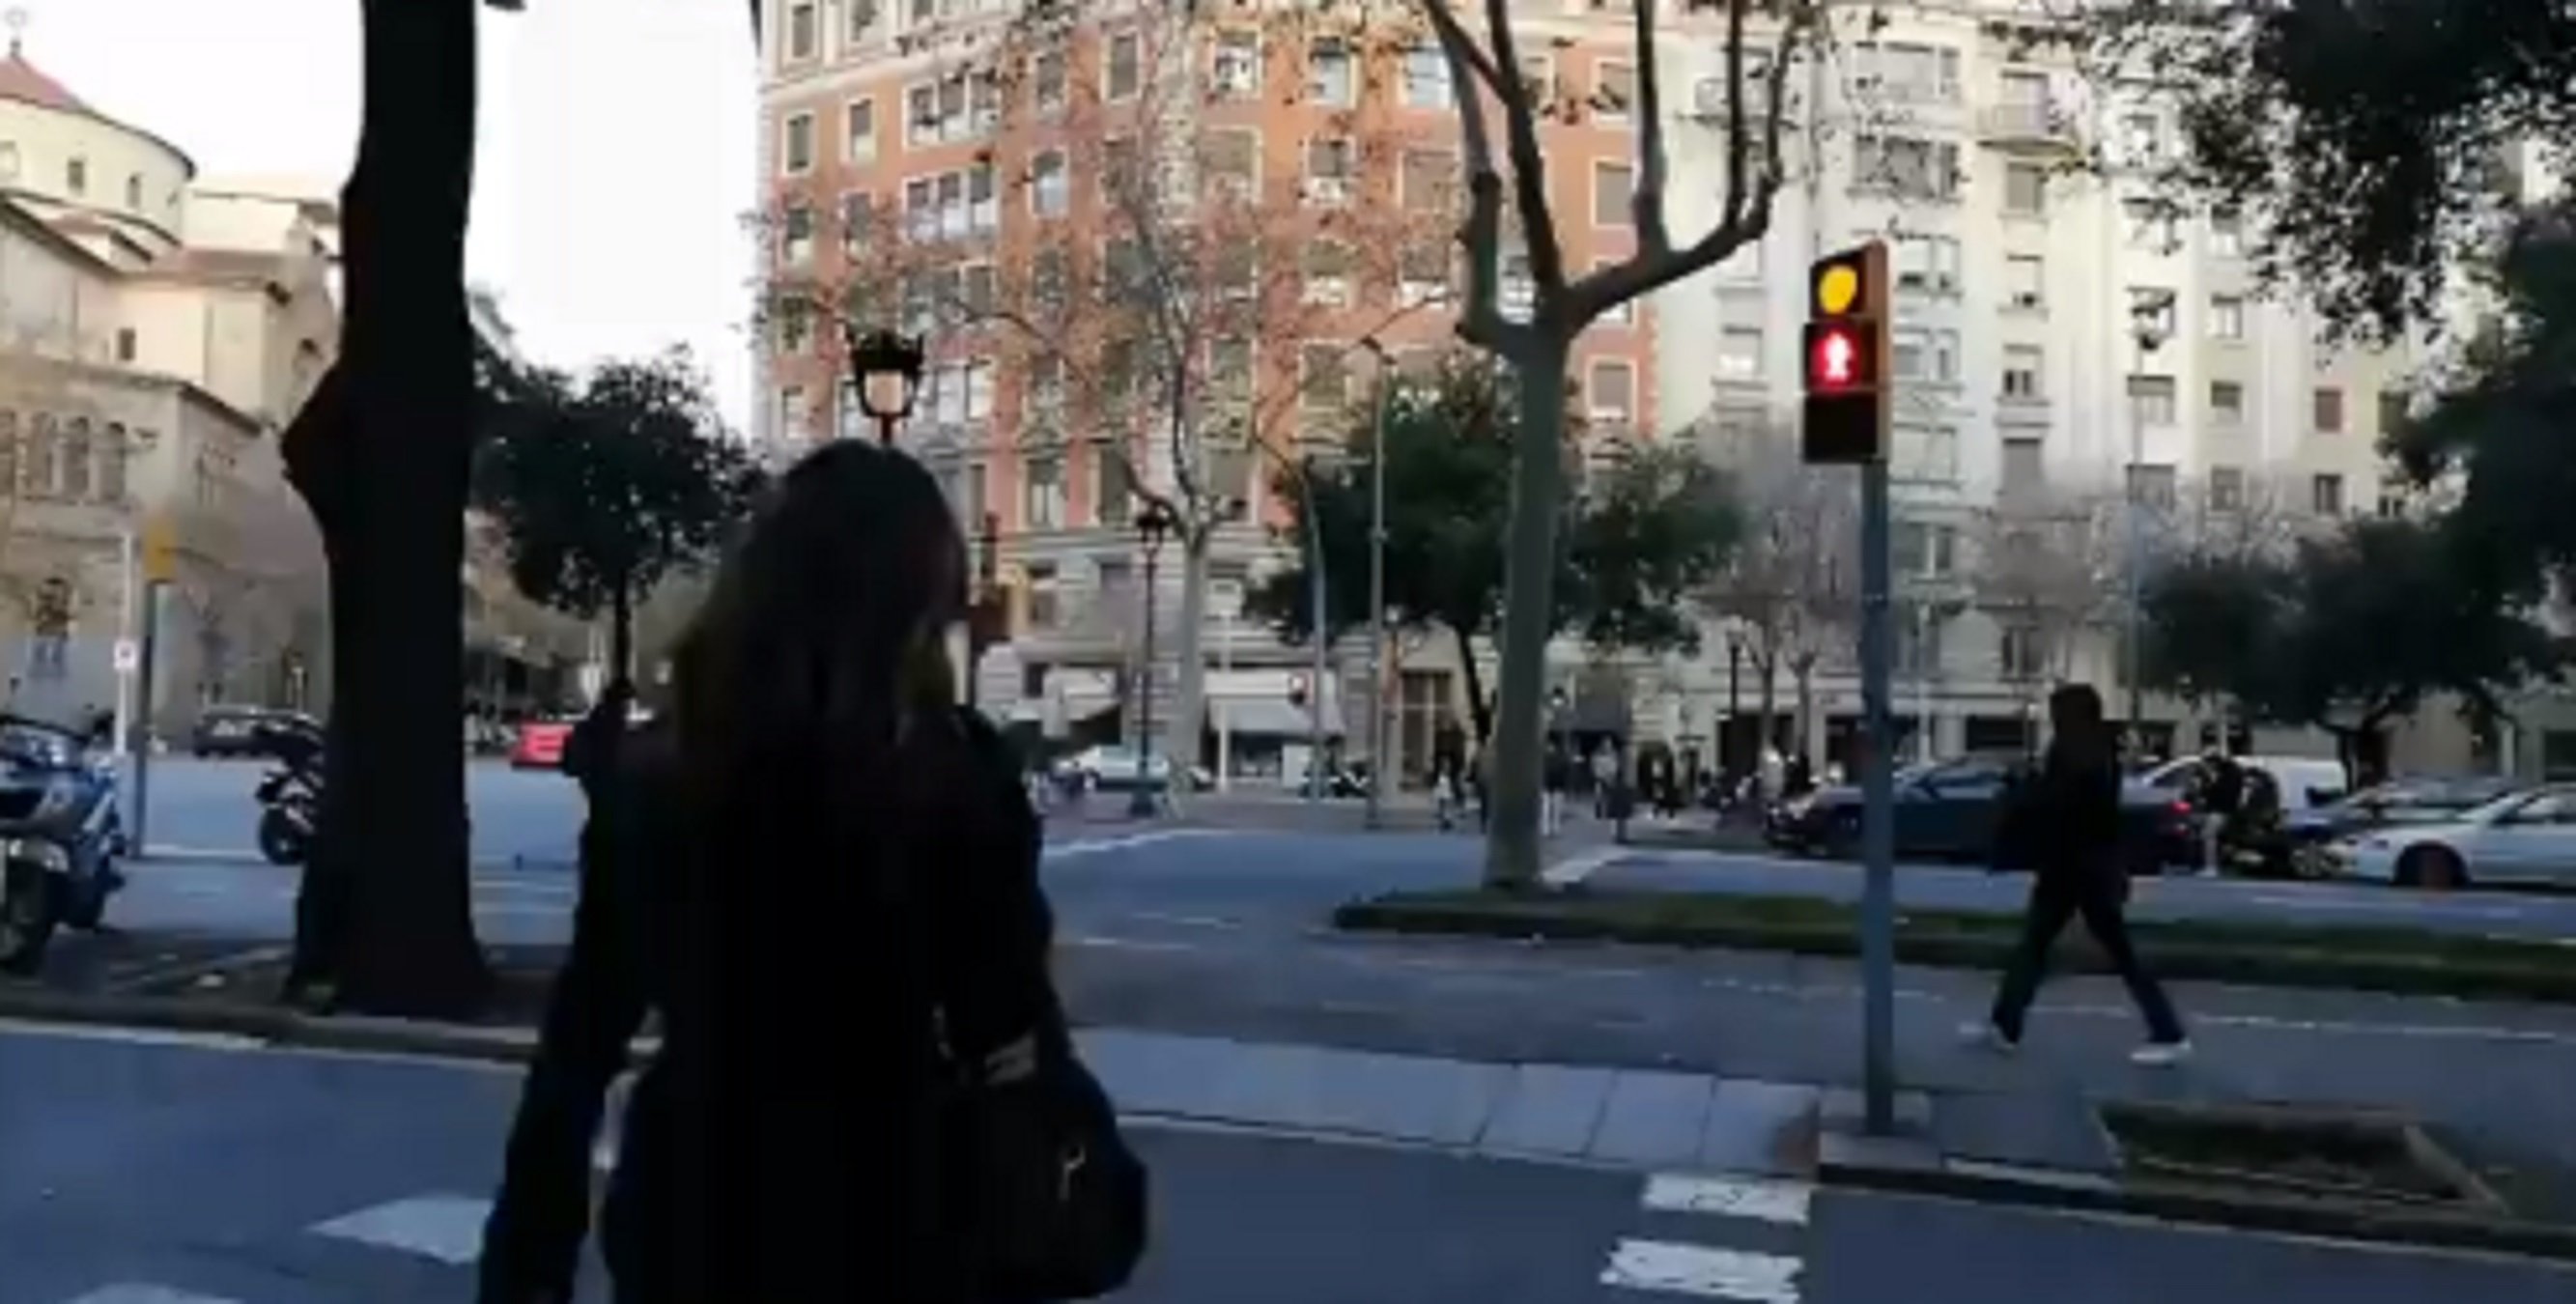 Un catalán televisivo, harto de lo que ha visto en la calle: "Basta ya"